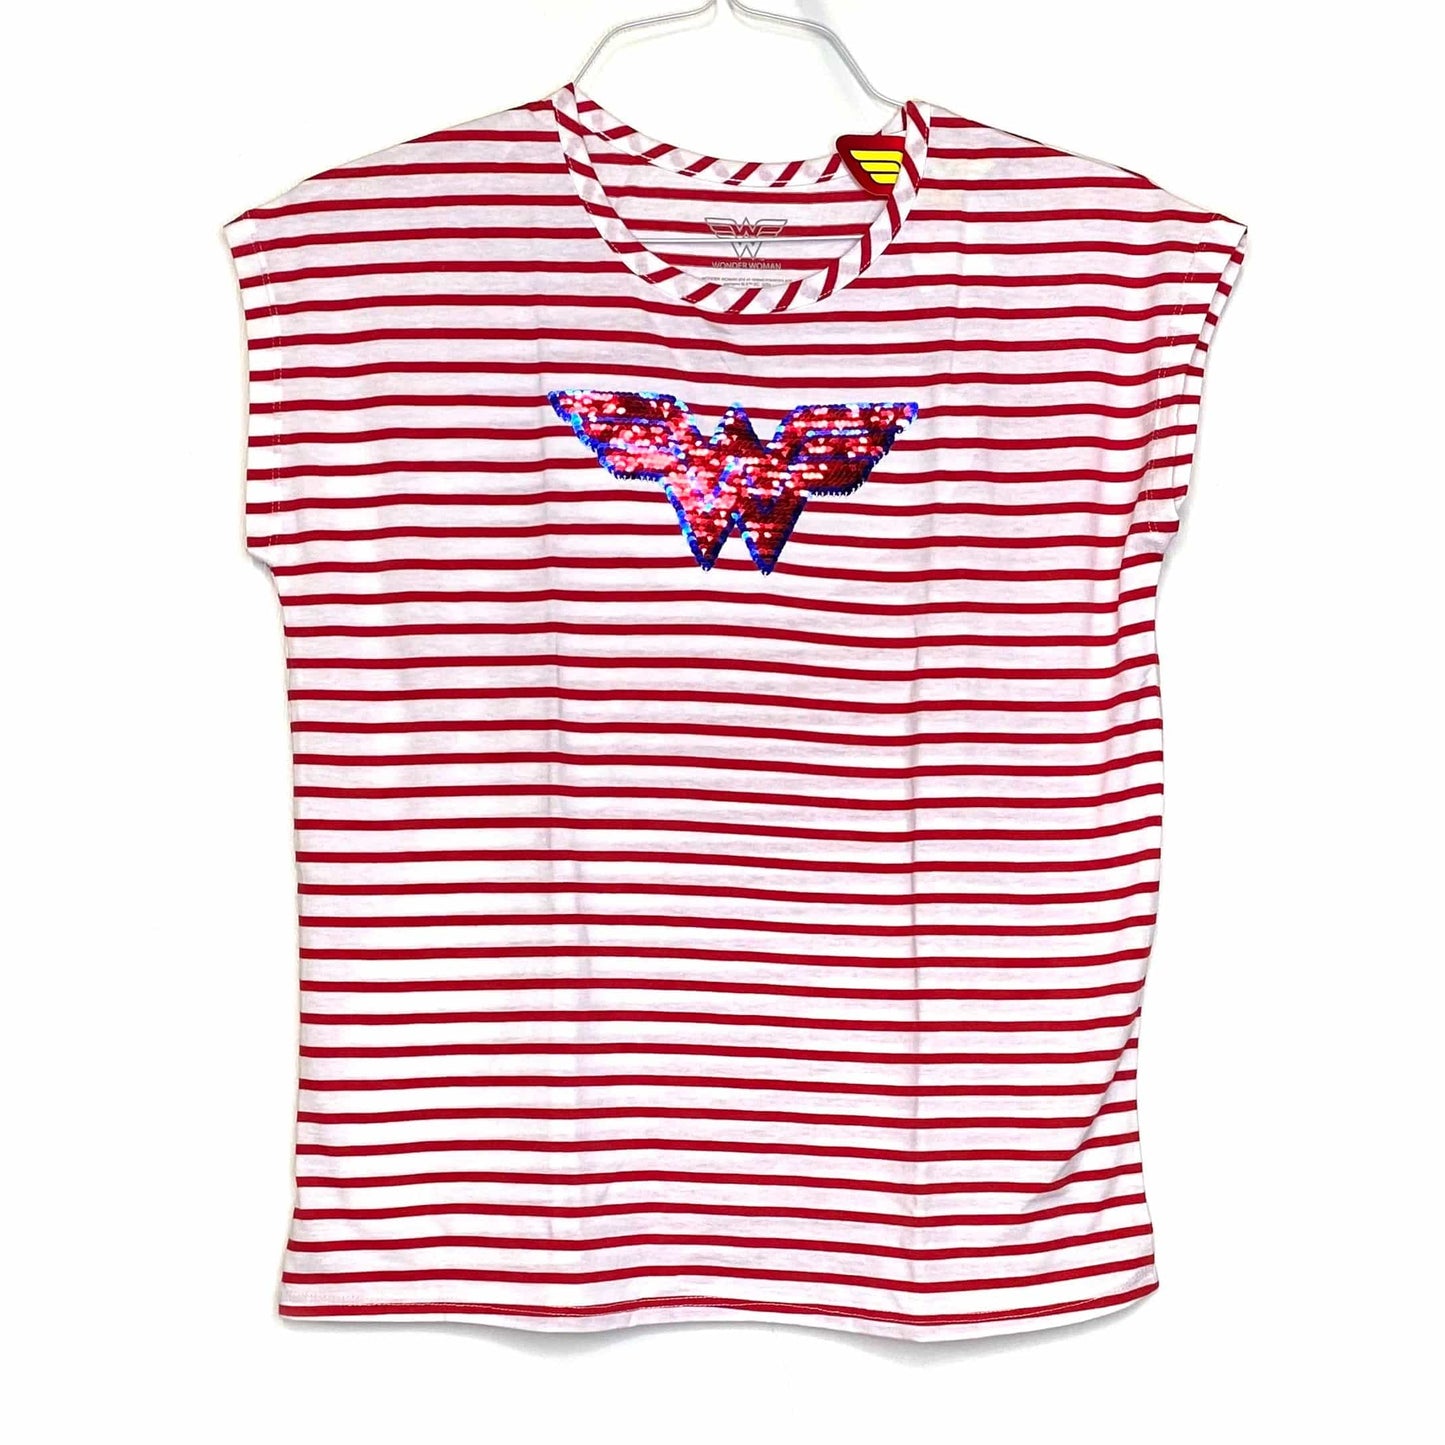 Wonder Woman Girls Short Sleeve Red Flip Sequin Tee Shirt T-Shirt NWT